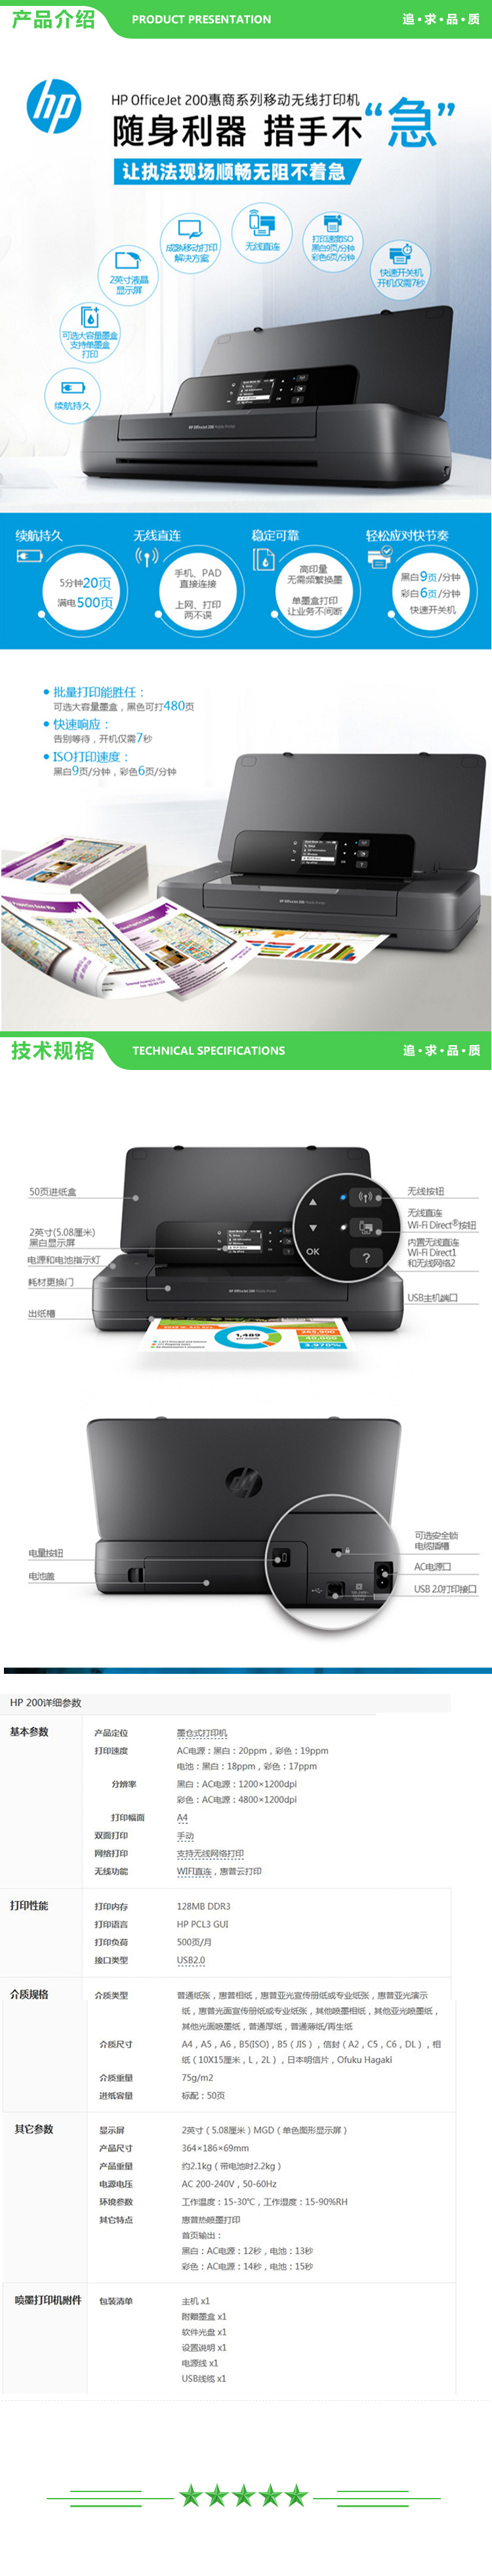 惠普 HP OfficeJet 200 Mobile Printer A4彩色喷墨打印机 9页 2.jpg